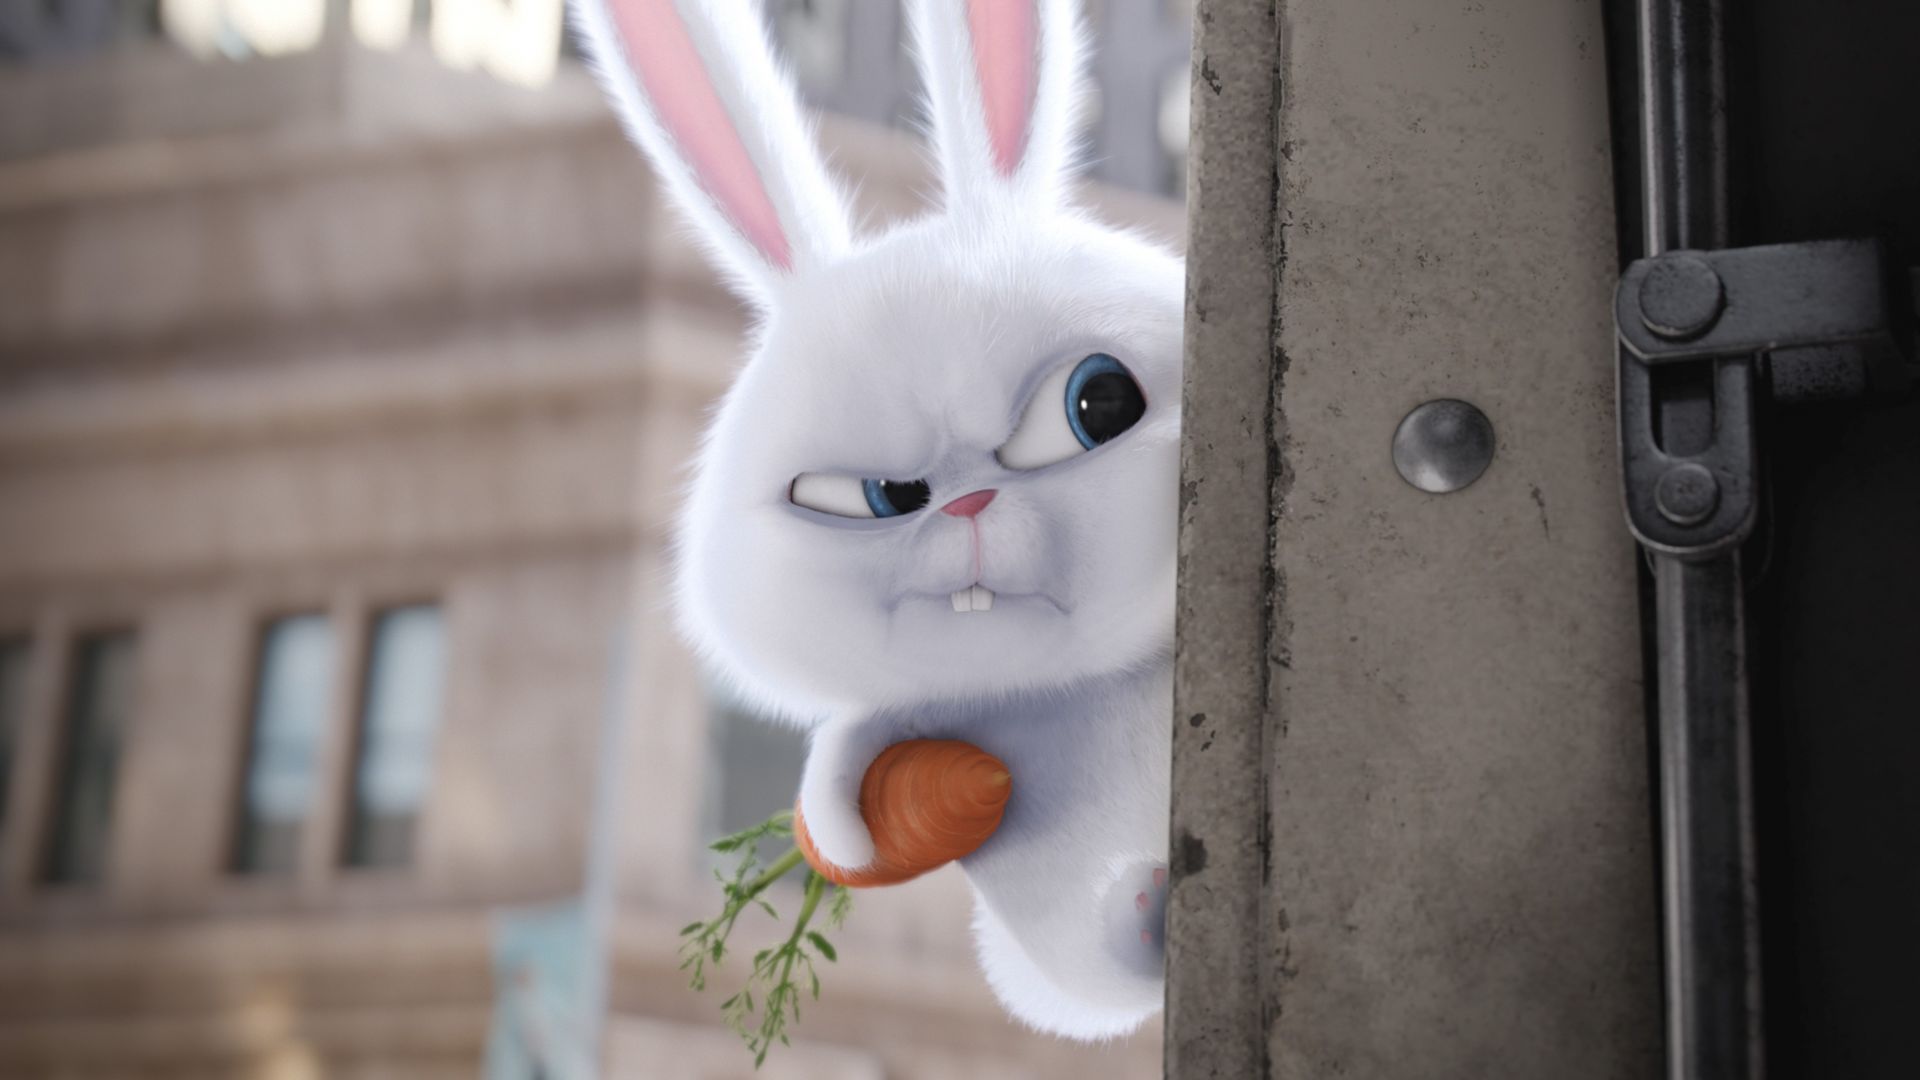 Тайная жизнь домашних животных, кролик, Лучшие мультфильмы 2016, The Secret Life of Pets, rabbit, Best Animation Movies of 2016, cartoon (horizontal)